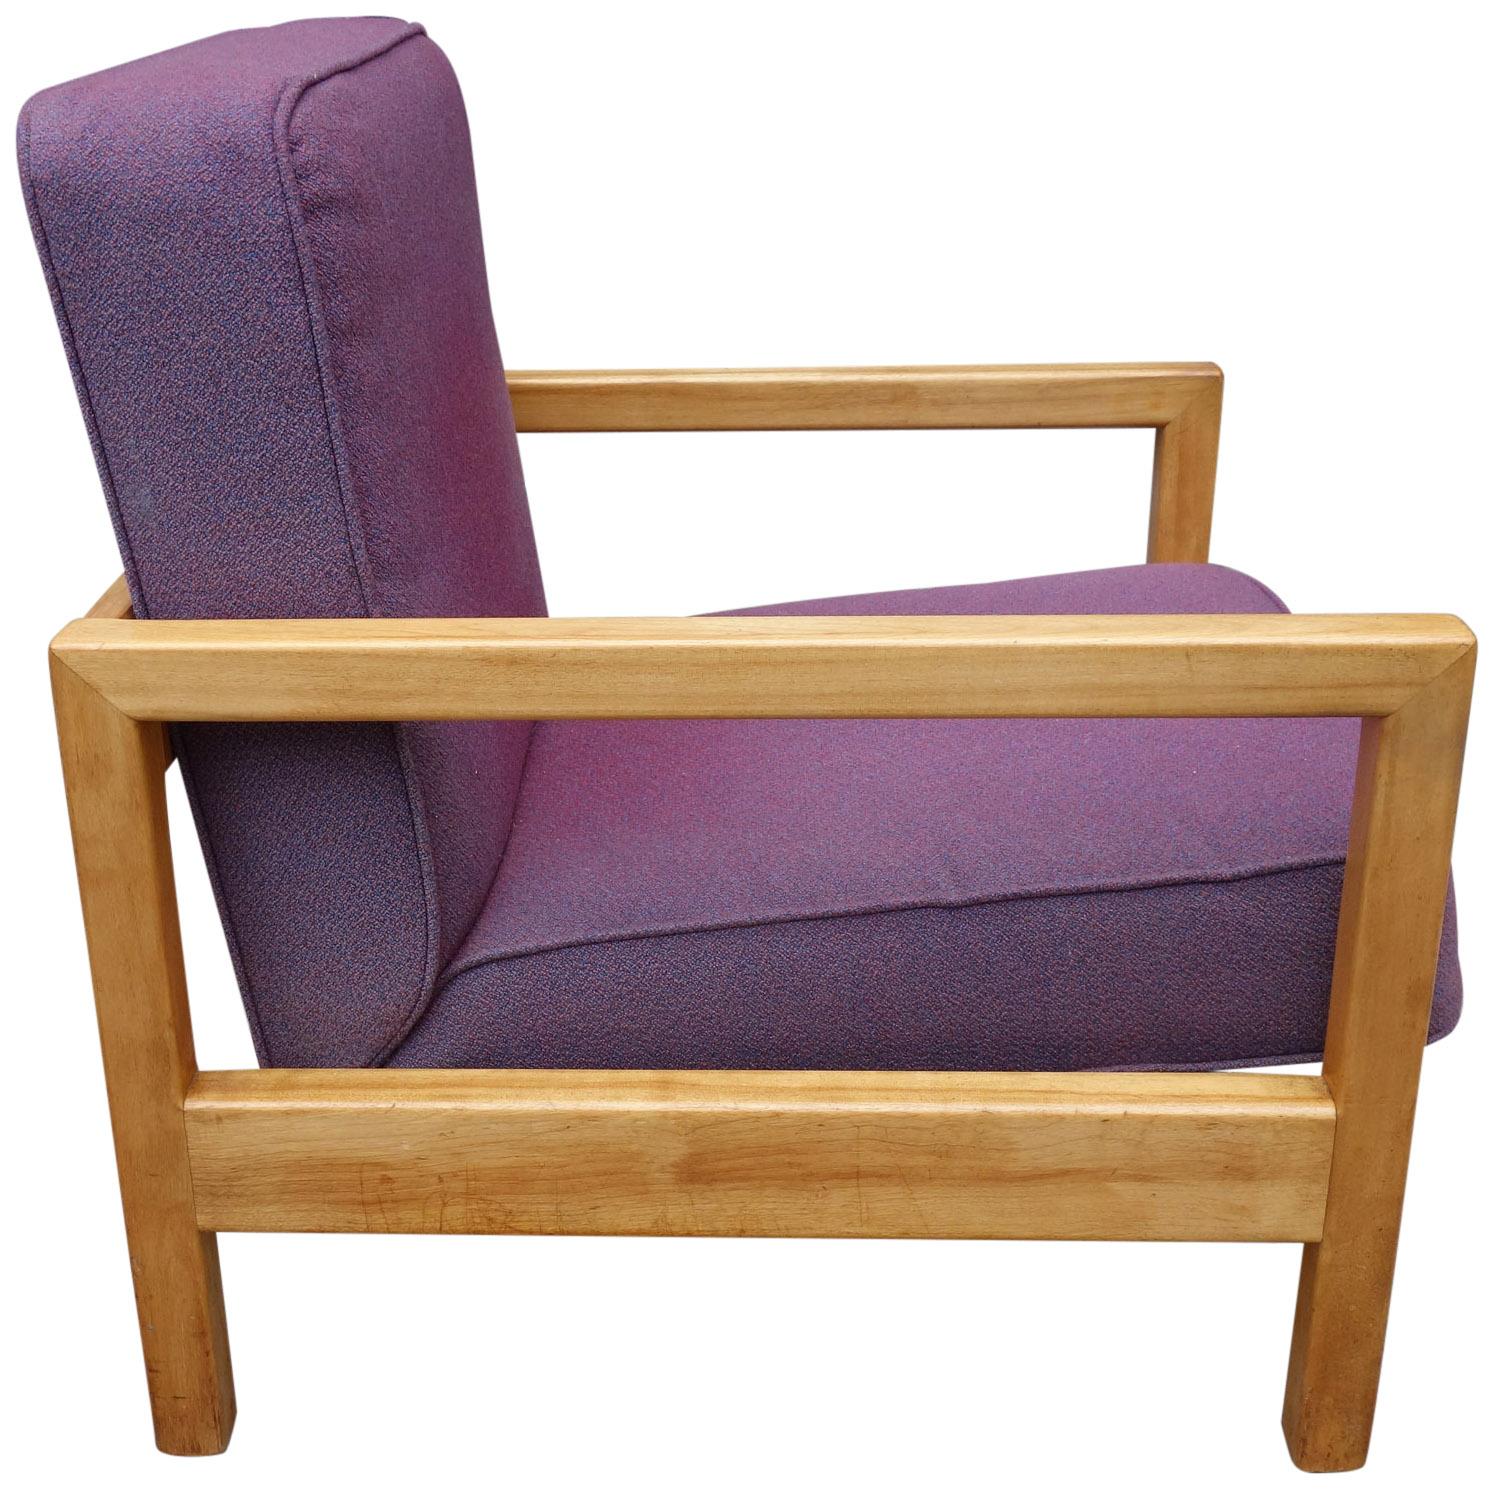 Für Ihre Betrachtung ist diese George Nelson entworfenen Sessel Modell 4774. Dieses sehr kubistische Design wurde in den 1950er Jahren von Herman Miller hergestellt. Aus massivem Birkenholz mit Originalpolsterung. Völlig unrestauriert und in